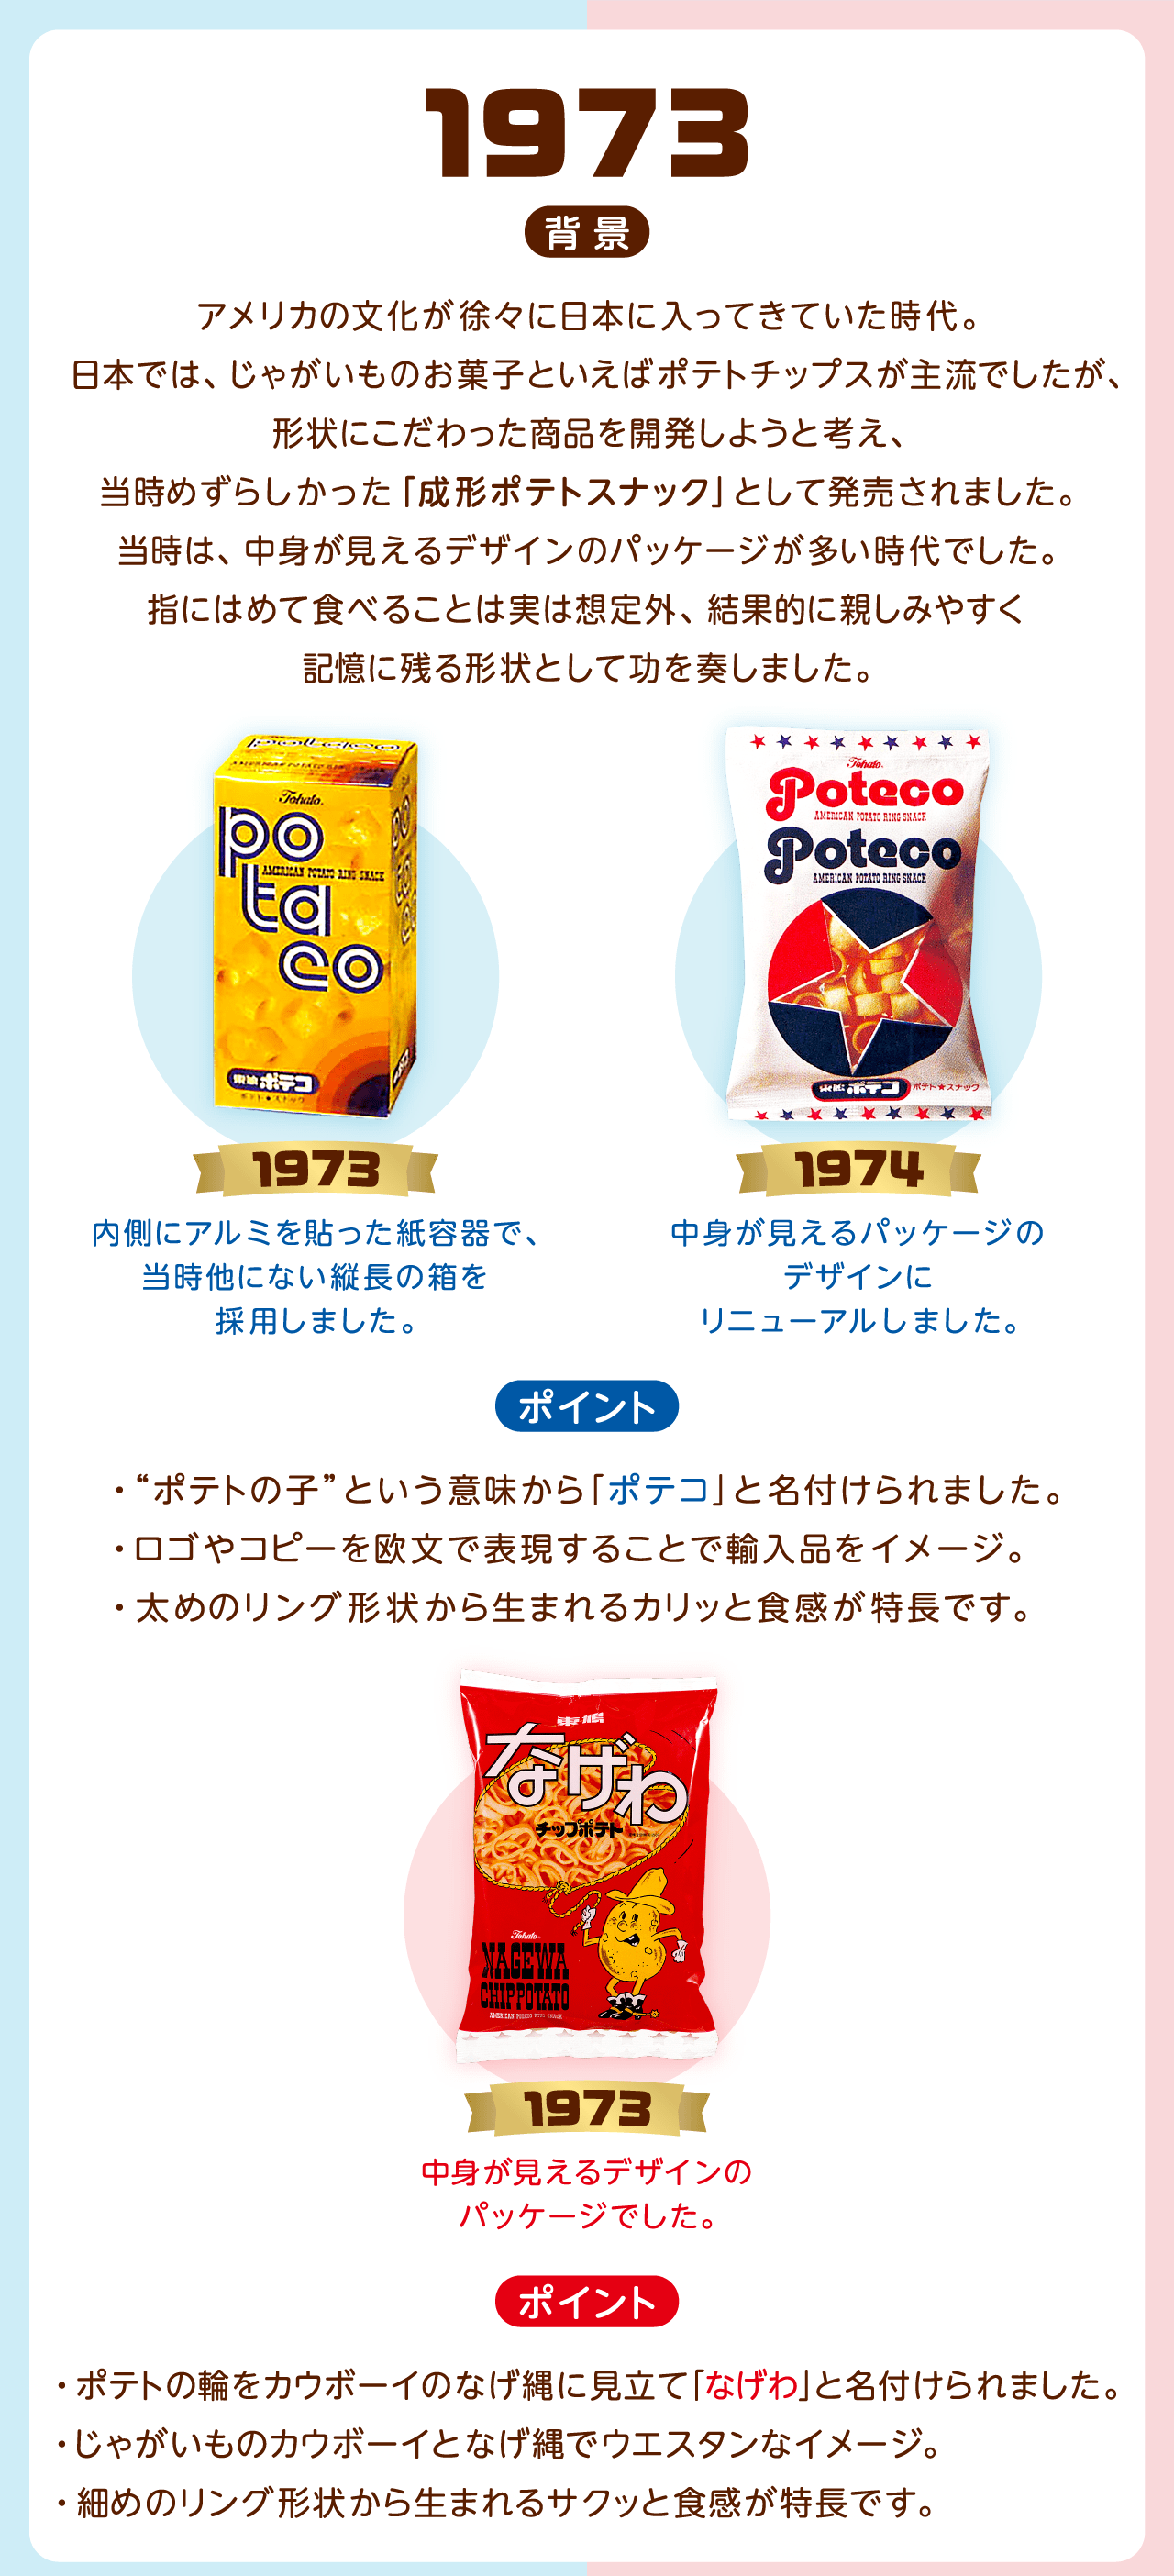 1973背景：アメリカの文化が徐々に日本に入ってきていた時代。日本では、じゃがいものお菓子といえばポテトチップスが主流でしたが、形状にこだわった商品を開発しようと考え、当時めずらしかった「成形ポテトスナック」として発売されました。当時は、中身が見えるデザインのパッケージが多い時代でした。指にはめて食べることは実は想定外、結果的に親しみやすく記憶に残る形状として功を奏しました。1973年ポテコ：中身が見えるパッケージのデザインにリニューアルしました。1974年ポテコ：内側にアルミを貼った紙容器で、当時他にない縦長の箱を採用しました。ポイント・